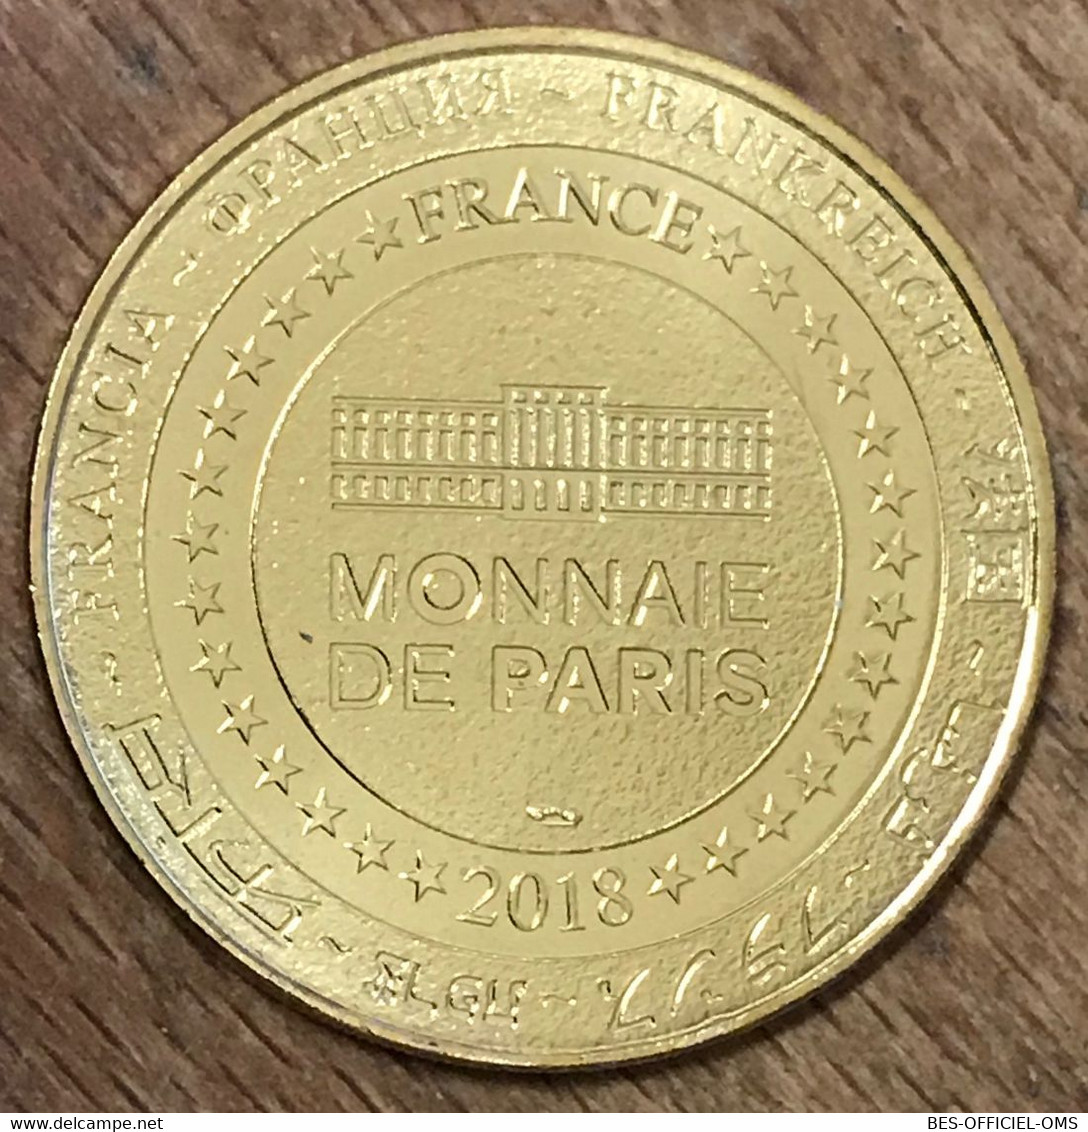 55 DOUAUMONT FONDATION DE L'OSSUAIRE 1918-2018 MDP 2018 MÉDAILLE MONNAIE DE PARIS JETON TOURISTIQUE MEDALS COINS TOKENS - 2018